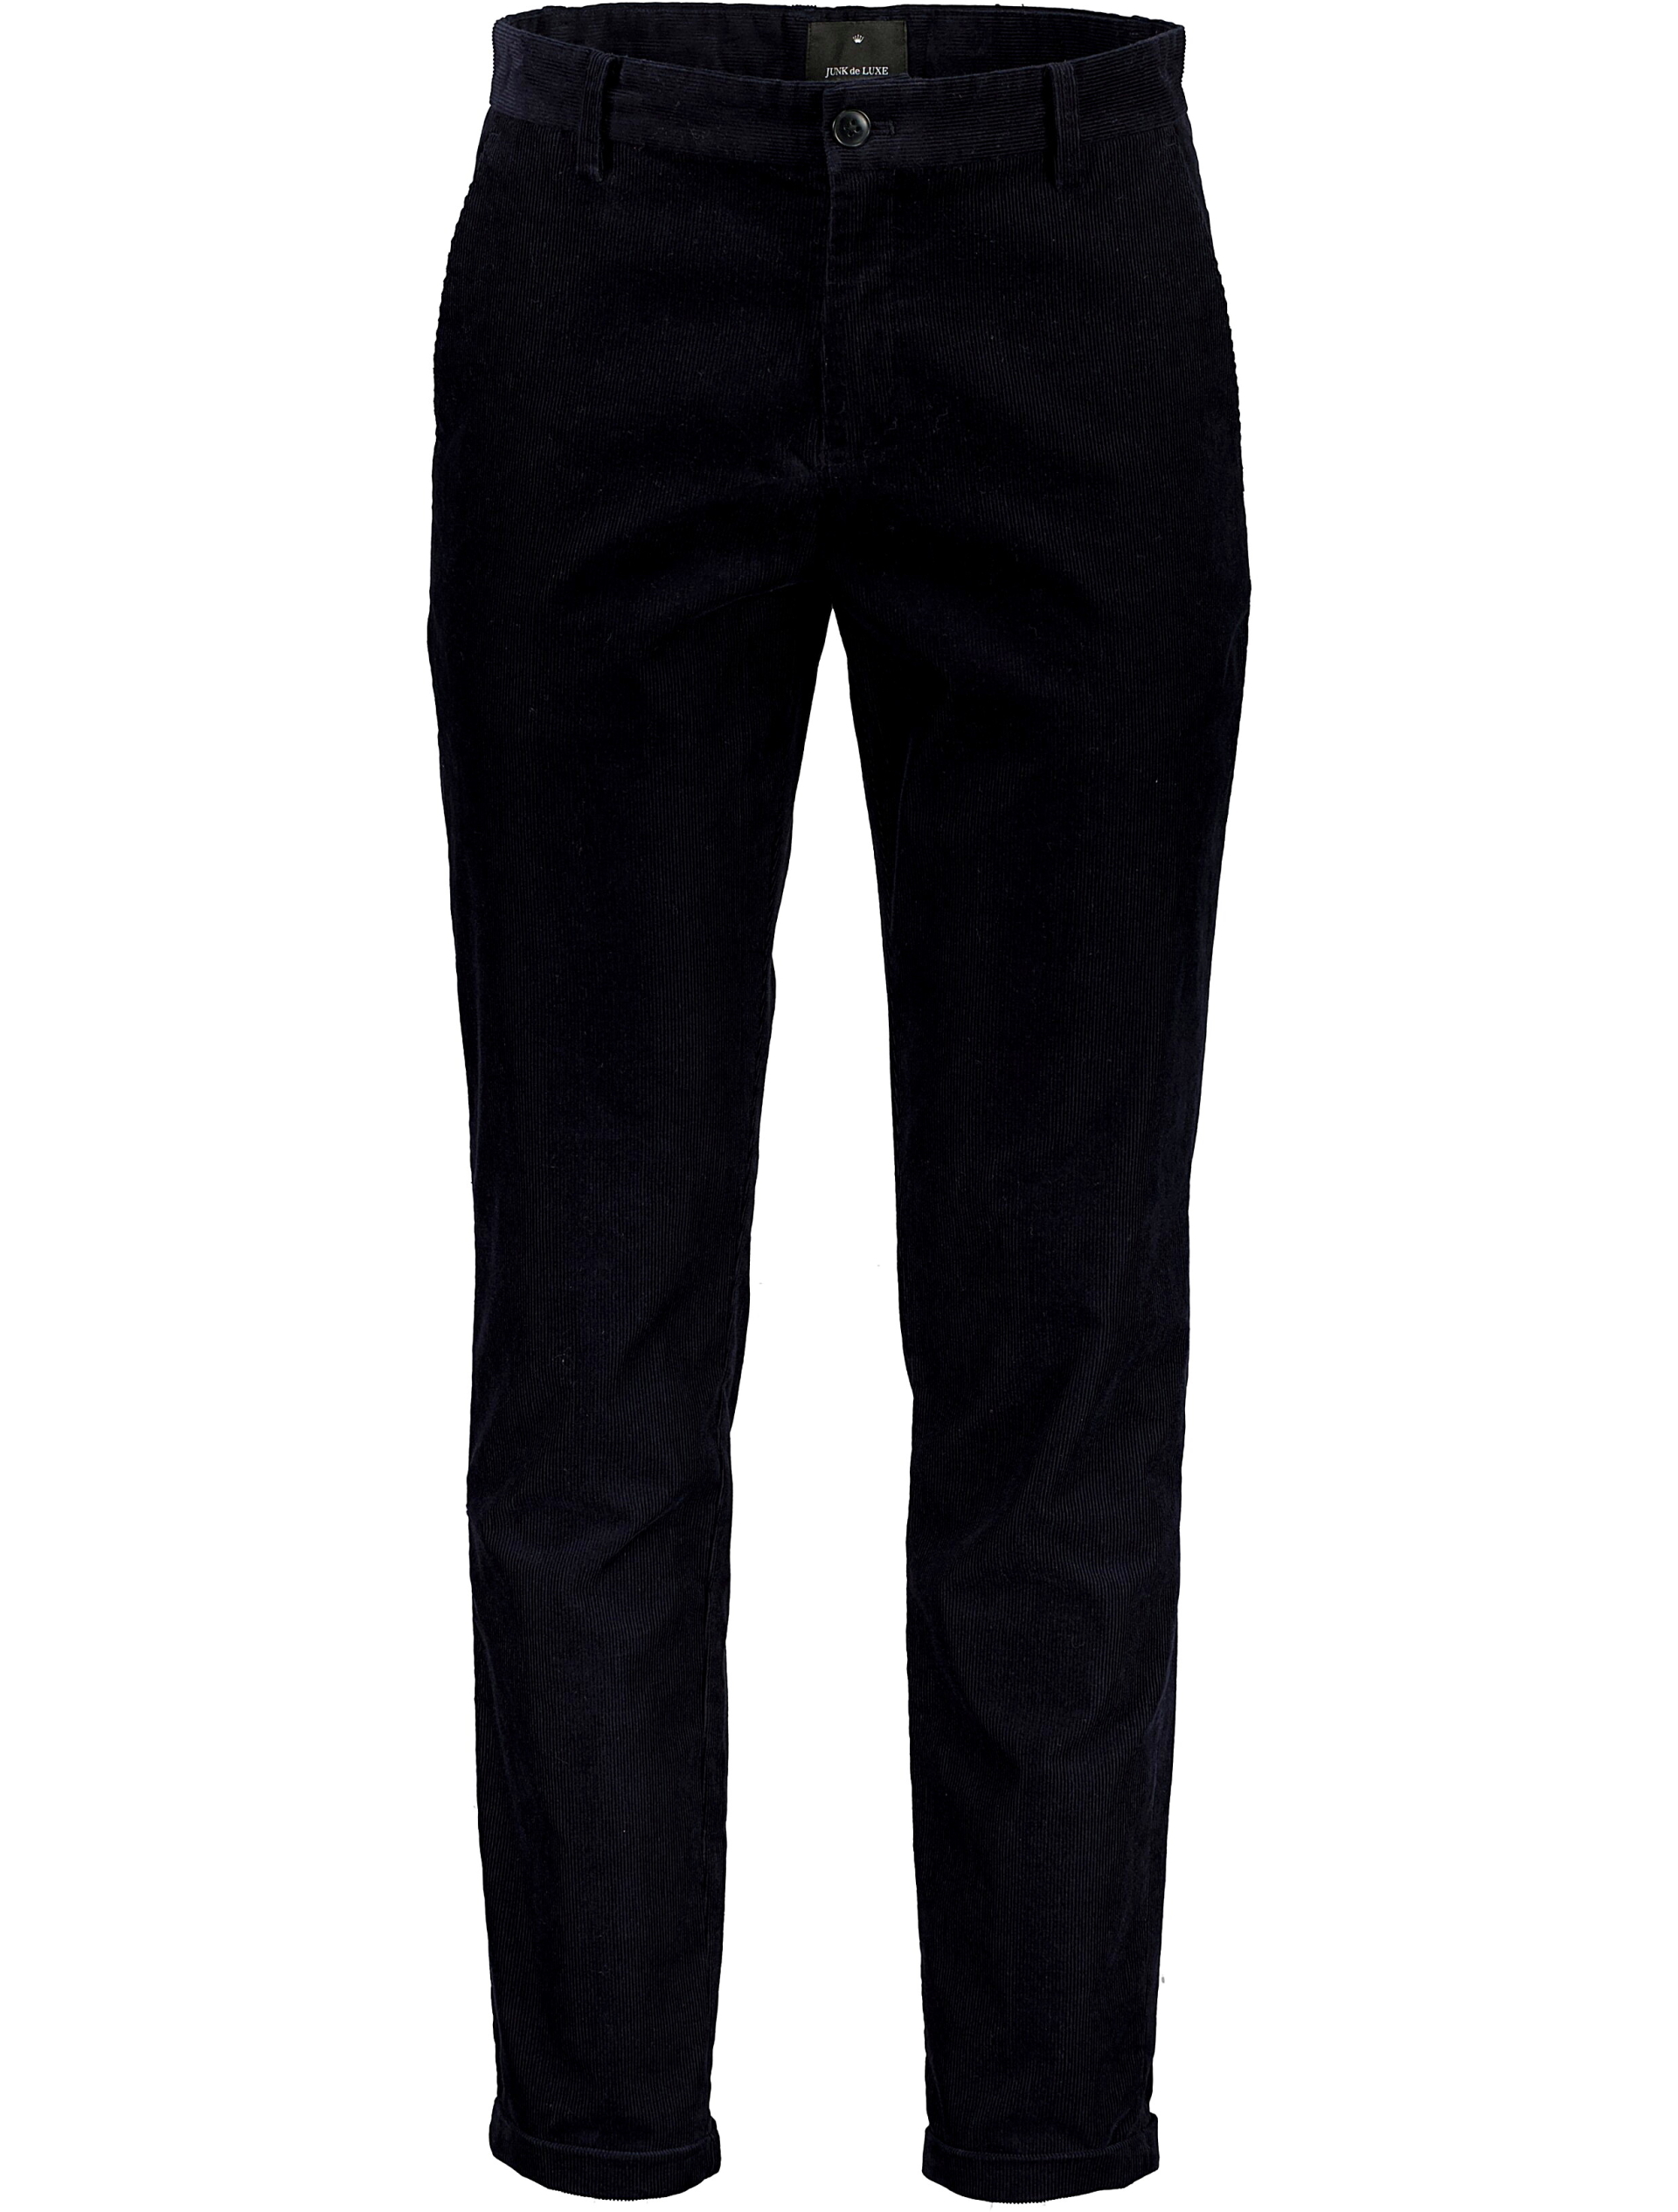 Junk de Luxe Klassiske bukser sort / black